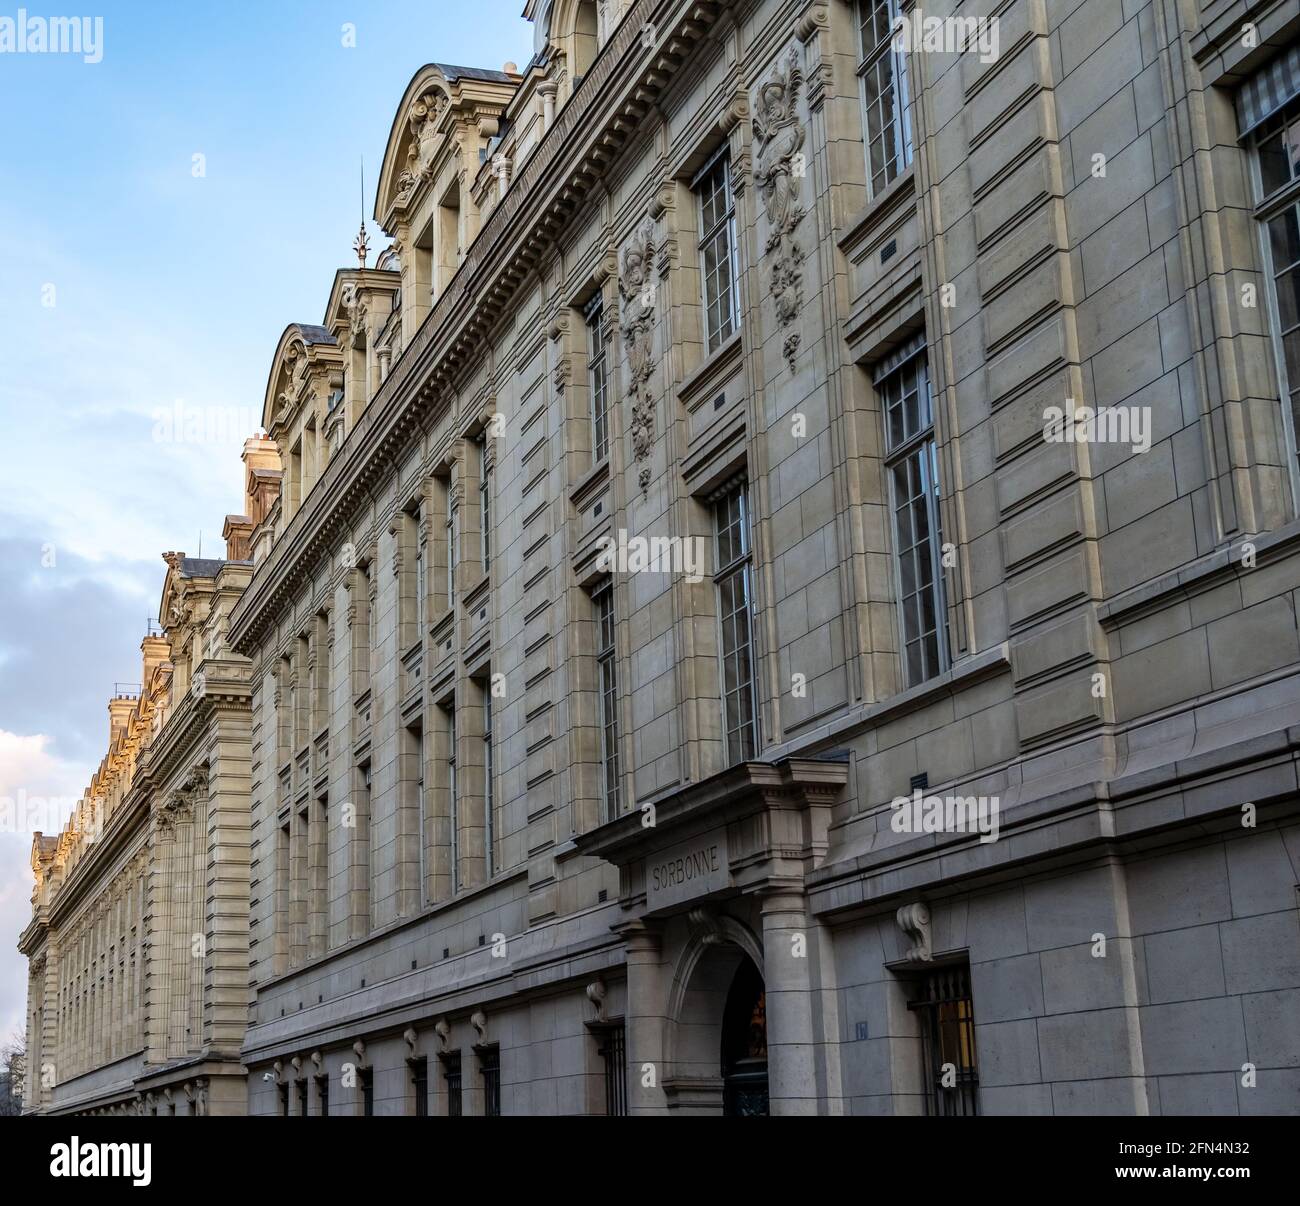 The historic building of Sorbonne University (Sorbonne Université), a public research university in Paris, France. Stock Photo